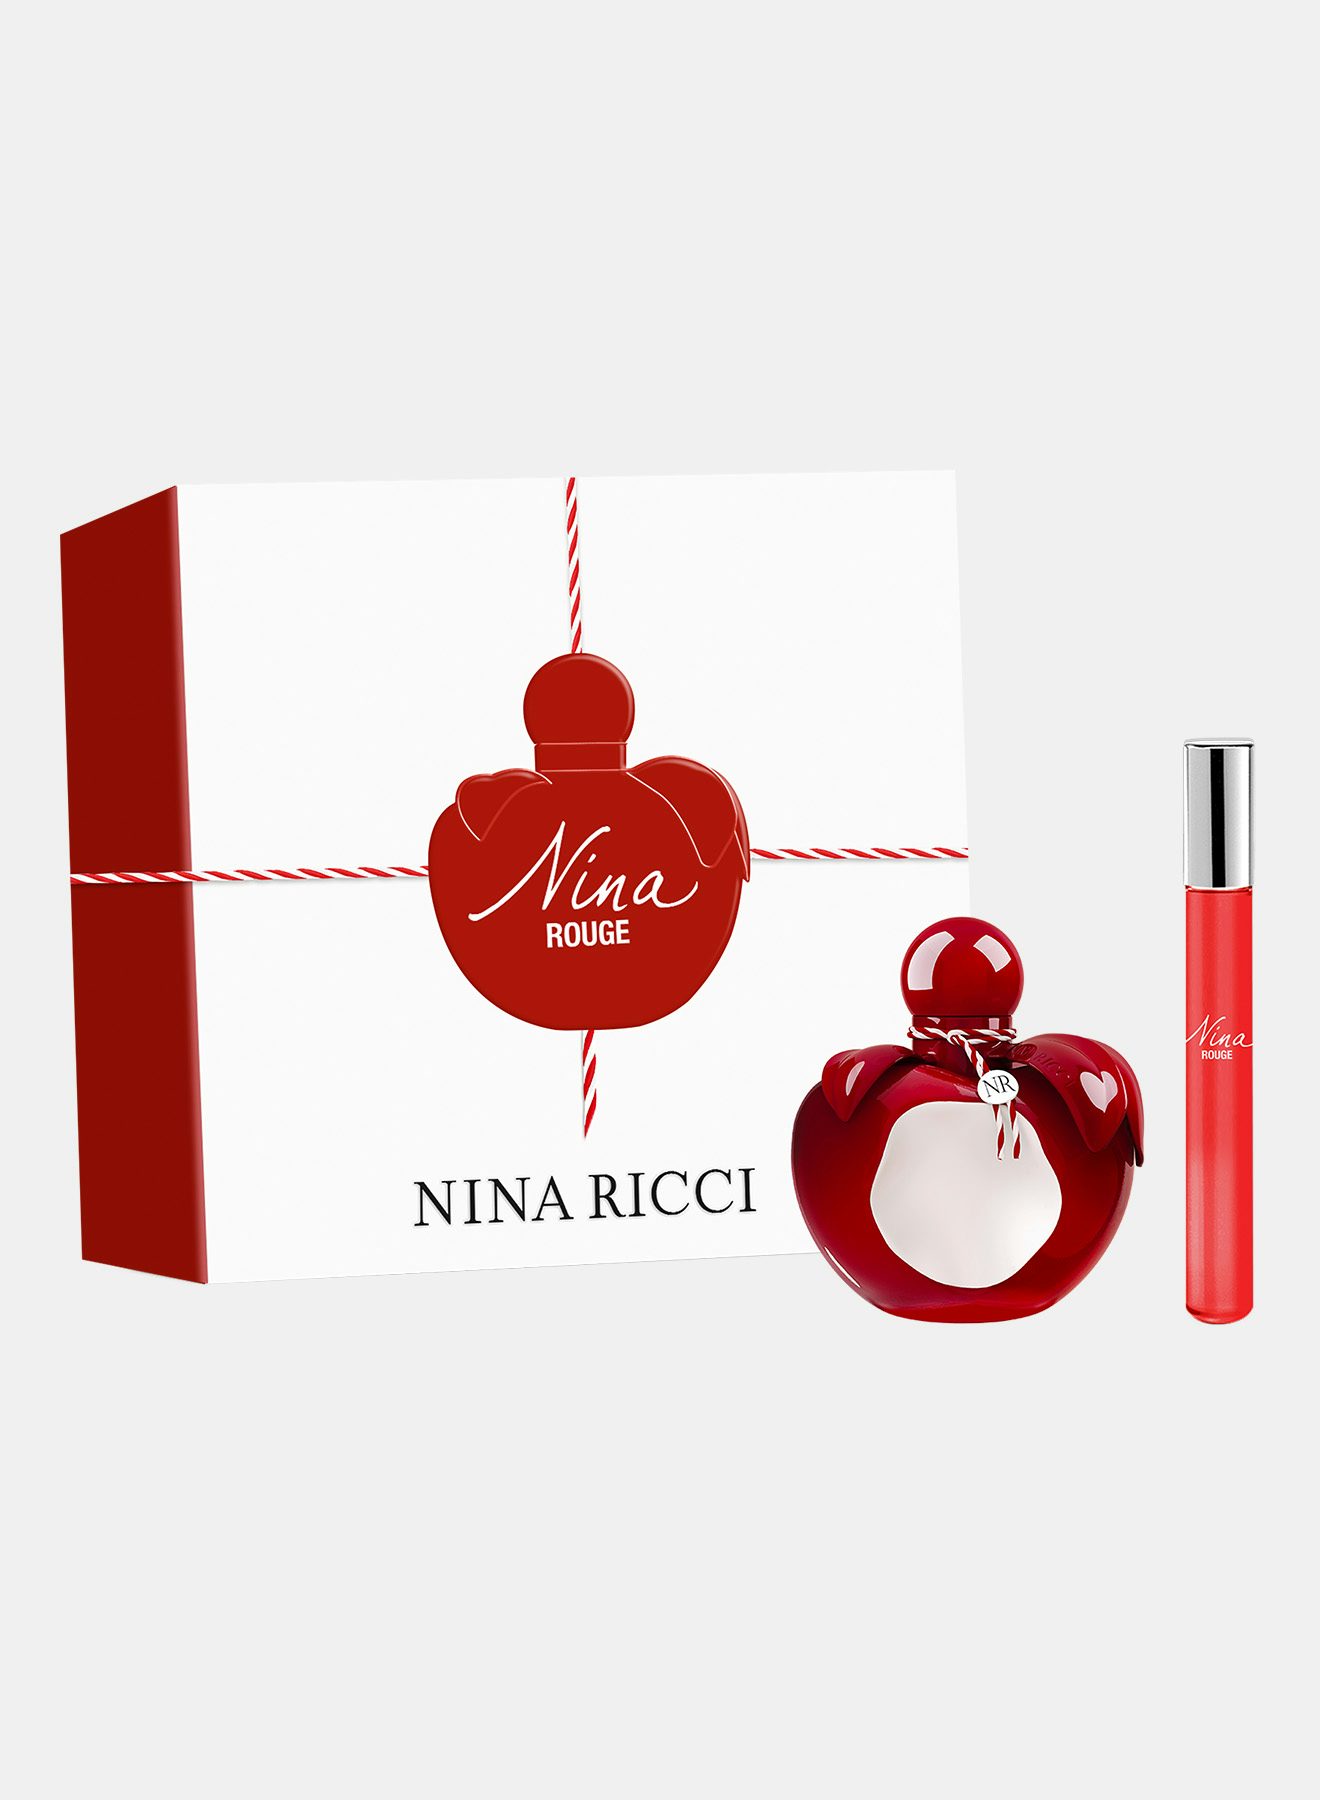 Nina Rouge set 2022 - Nina Ricci